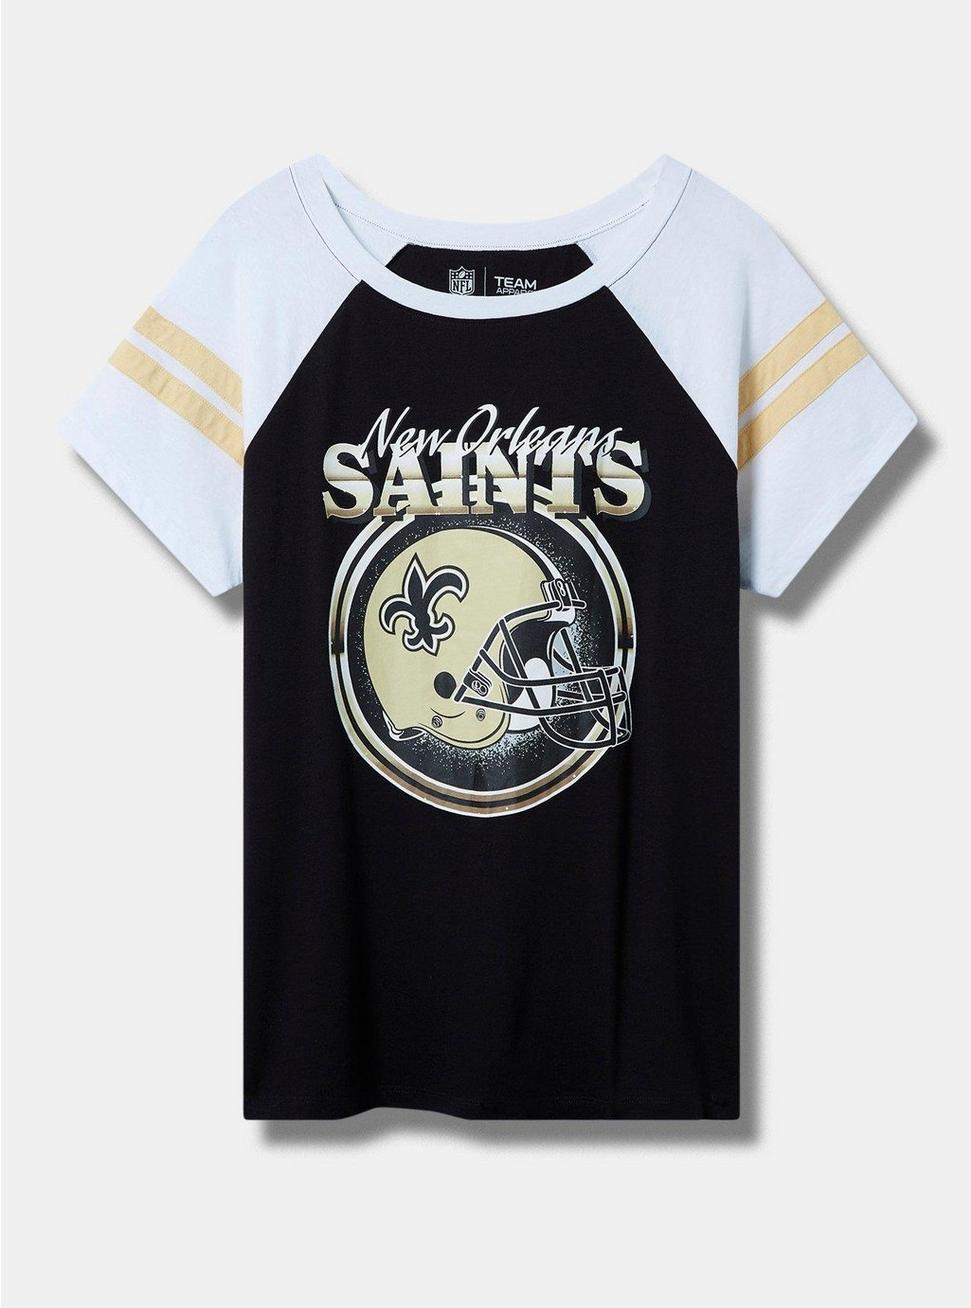 Plus Size NFL New Orleans Saints Classic Fit Cotton Boatneck Varsity Tee, DEEP BLACK, hi-res